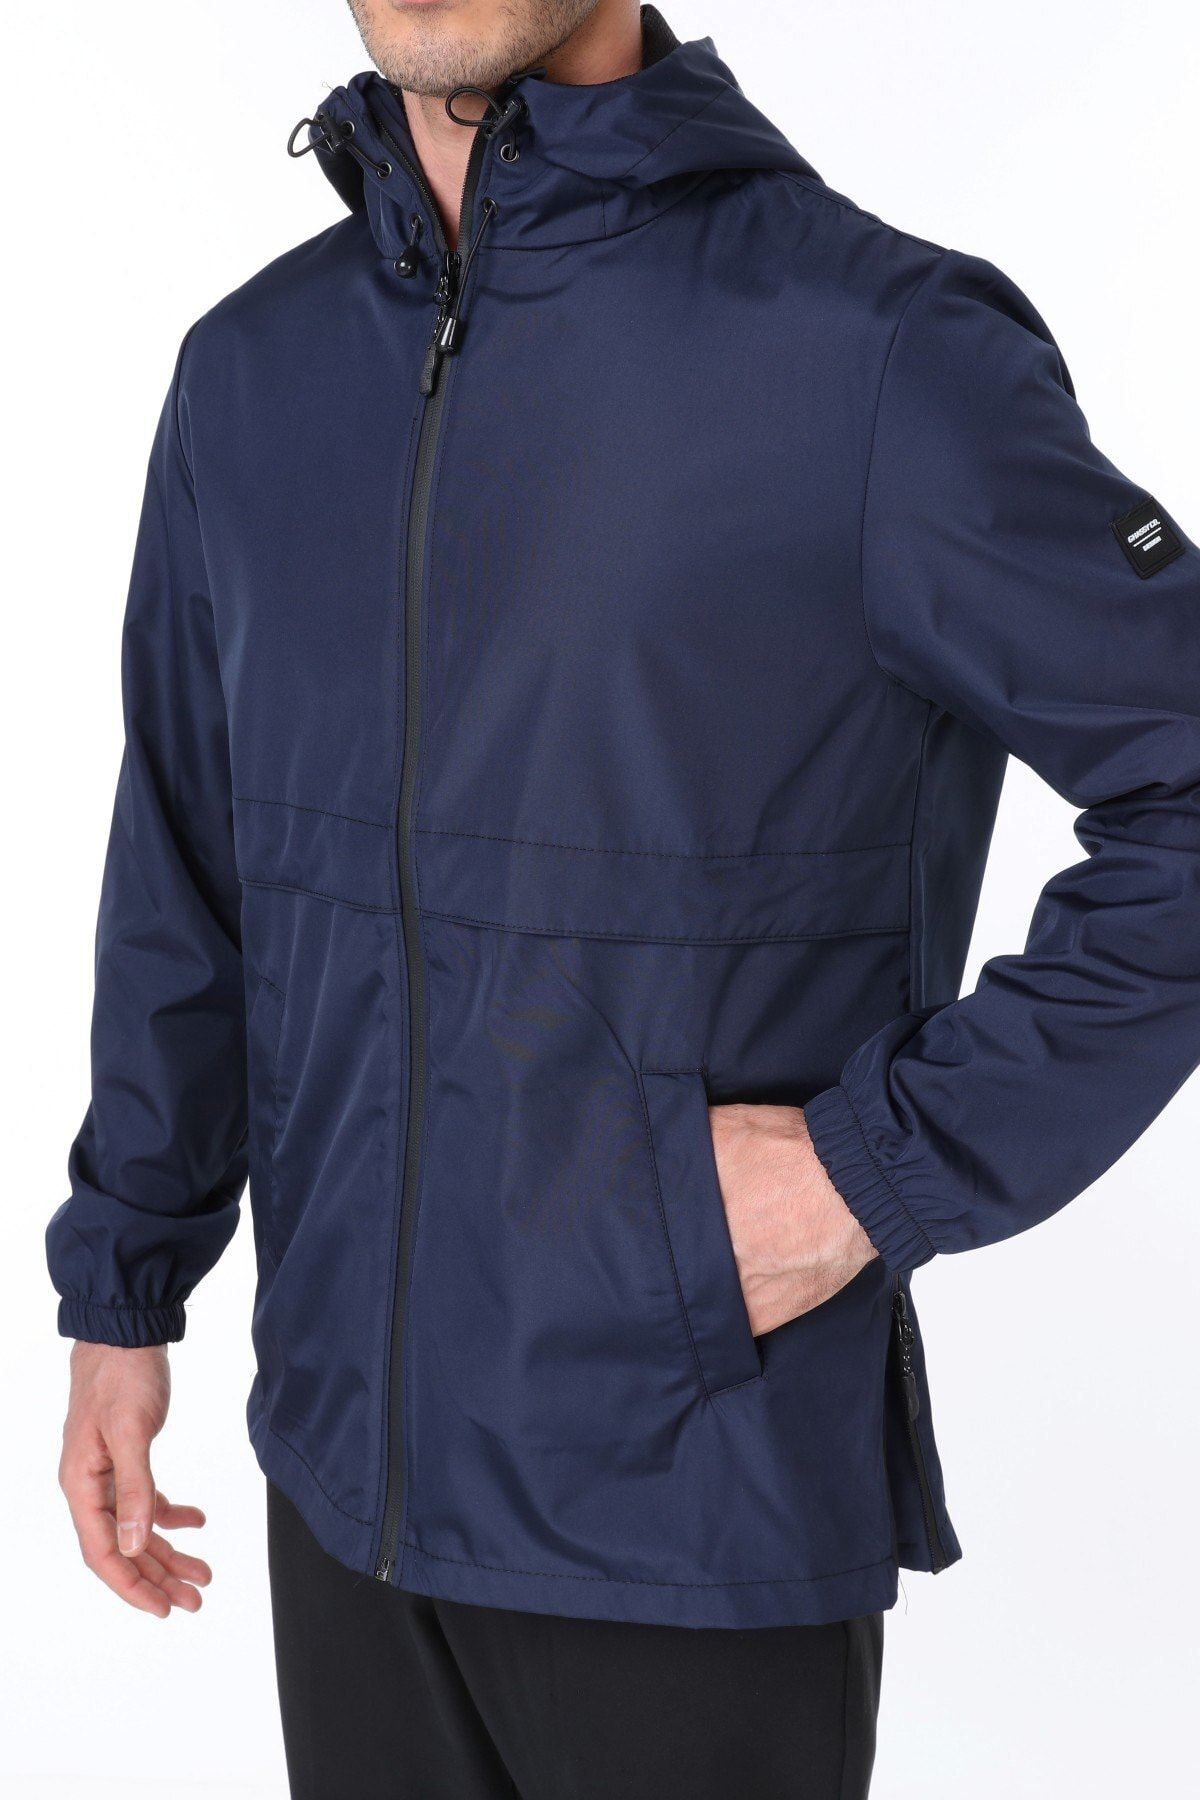 Ghassy Co Erkek Lacivert Rüzgarlık/Yağmurluk Outdoor Yırtmaç Detaylı Mevsimlik Spor Ceket